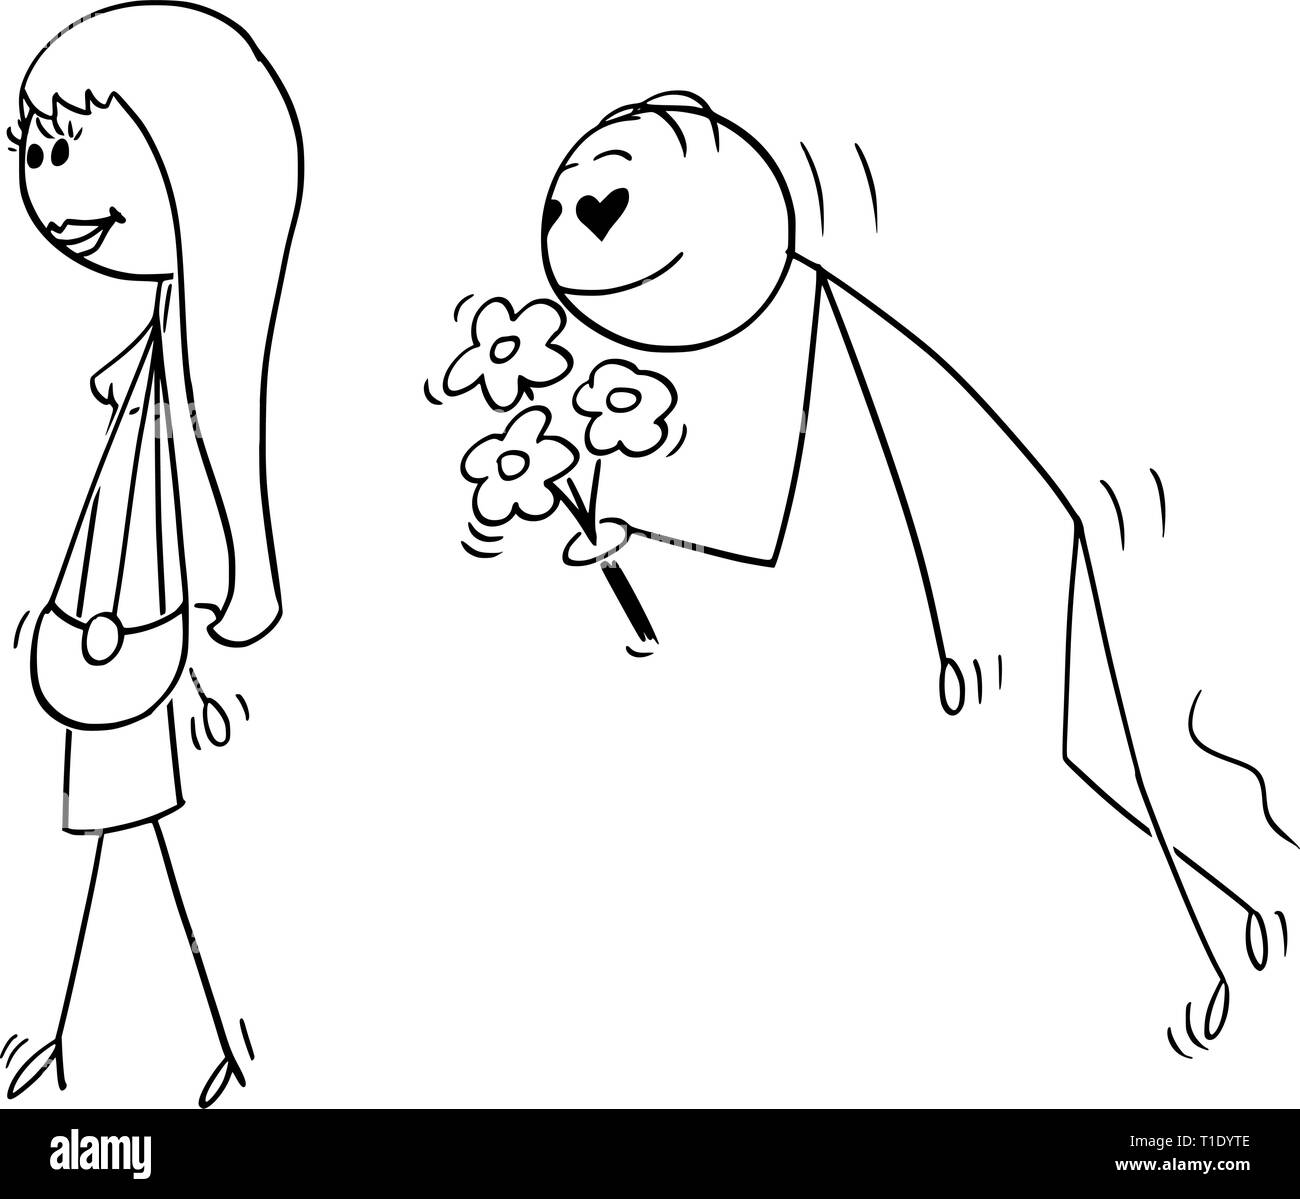 Cartoon stick figure dessin illustration conceptuelle de belle belle jeune femme suivie d'amoureux ou amoureuse ou swain avec les yeux en forme de coeur et la tenue des fleurs. Illustration de Vecteur